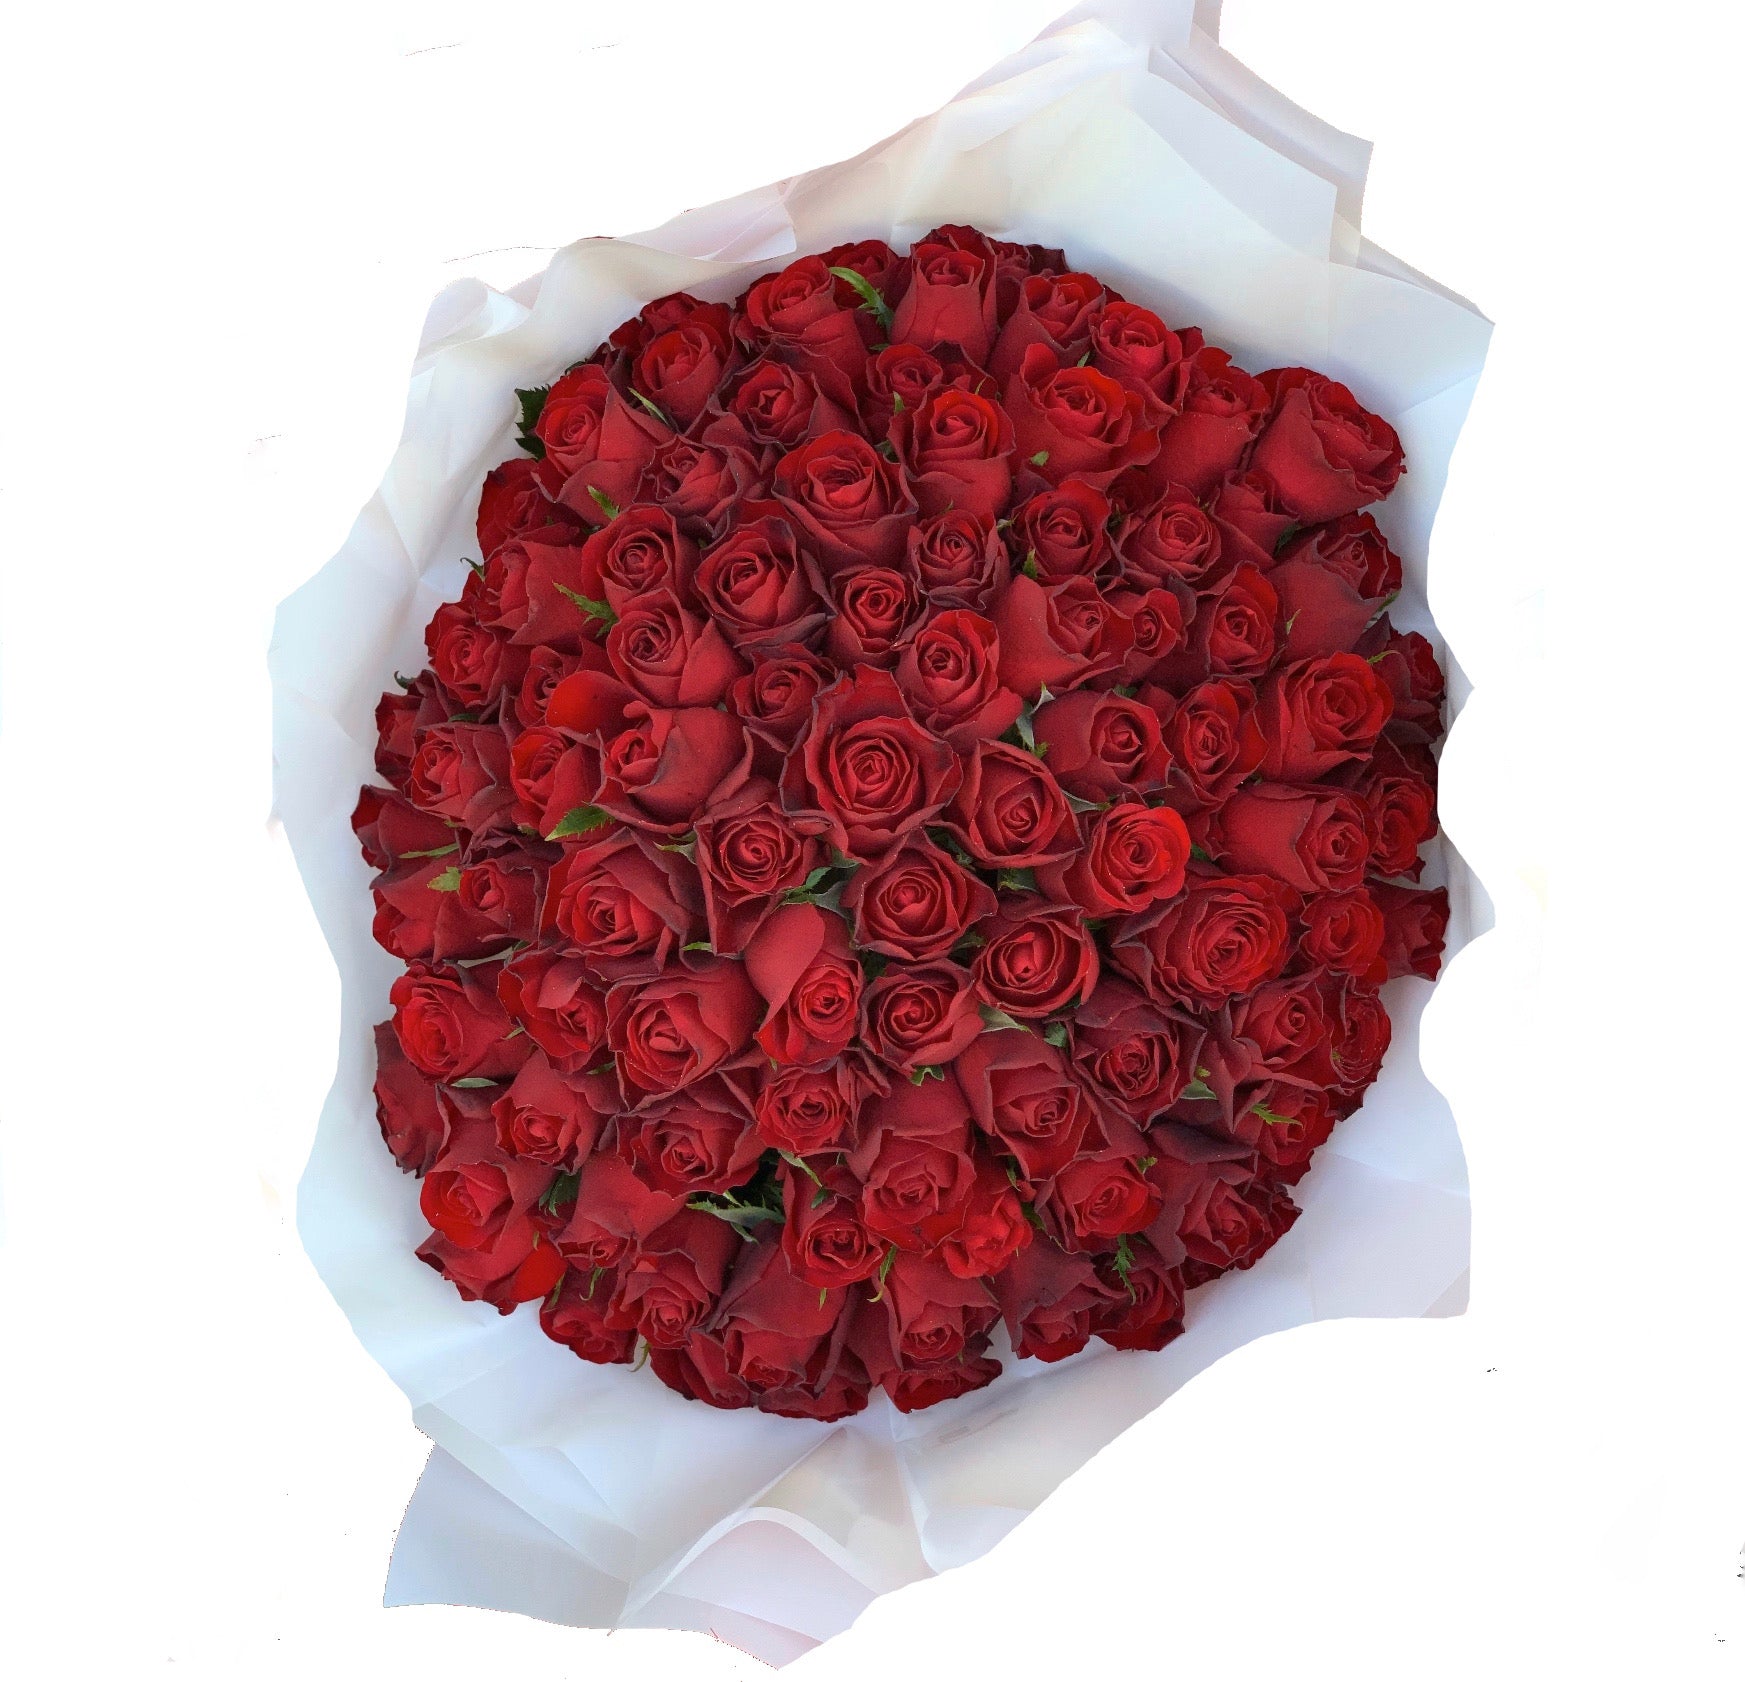 Grandeur - 100 Premium Red Roses